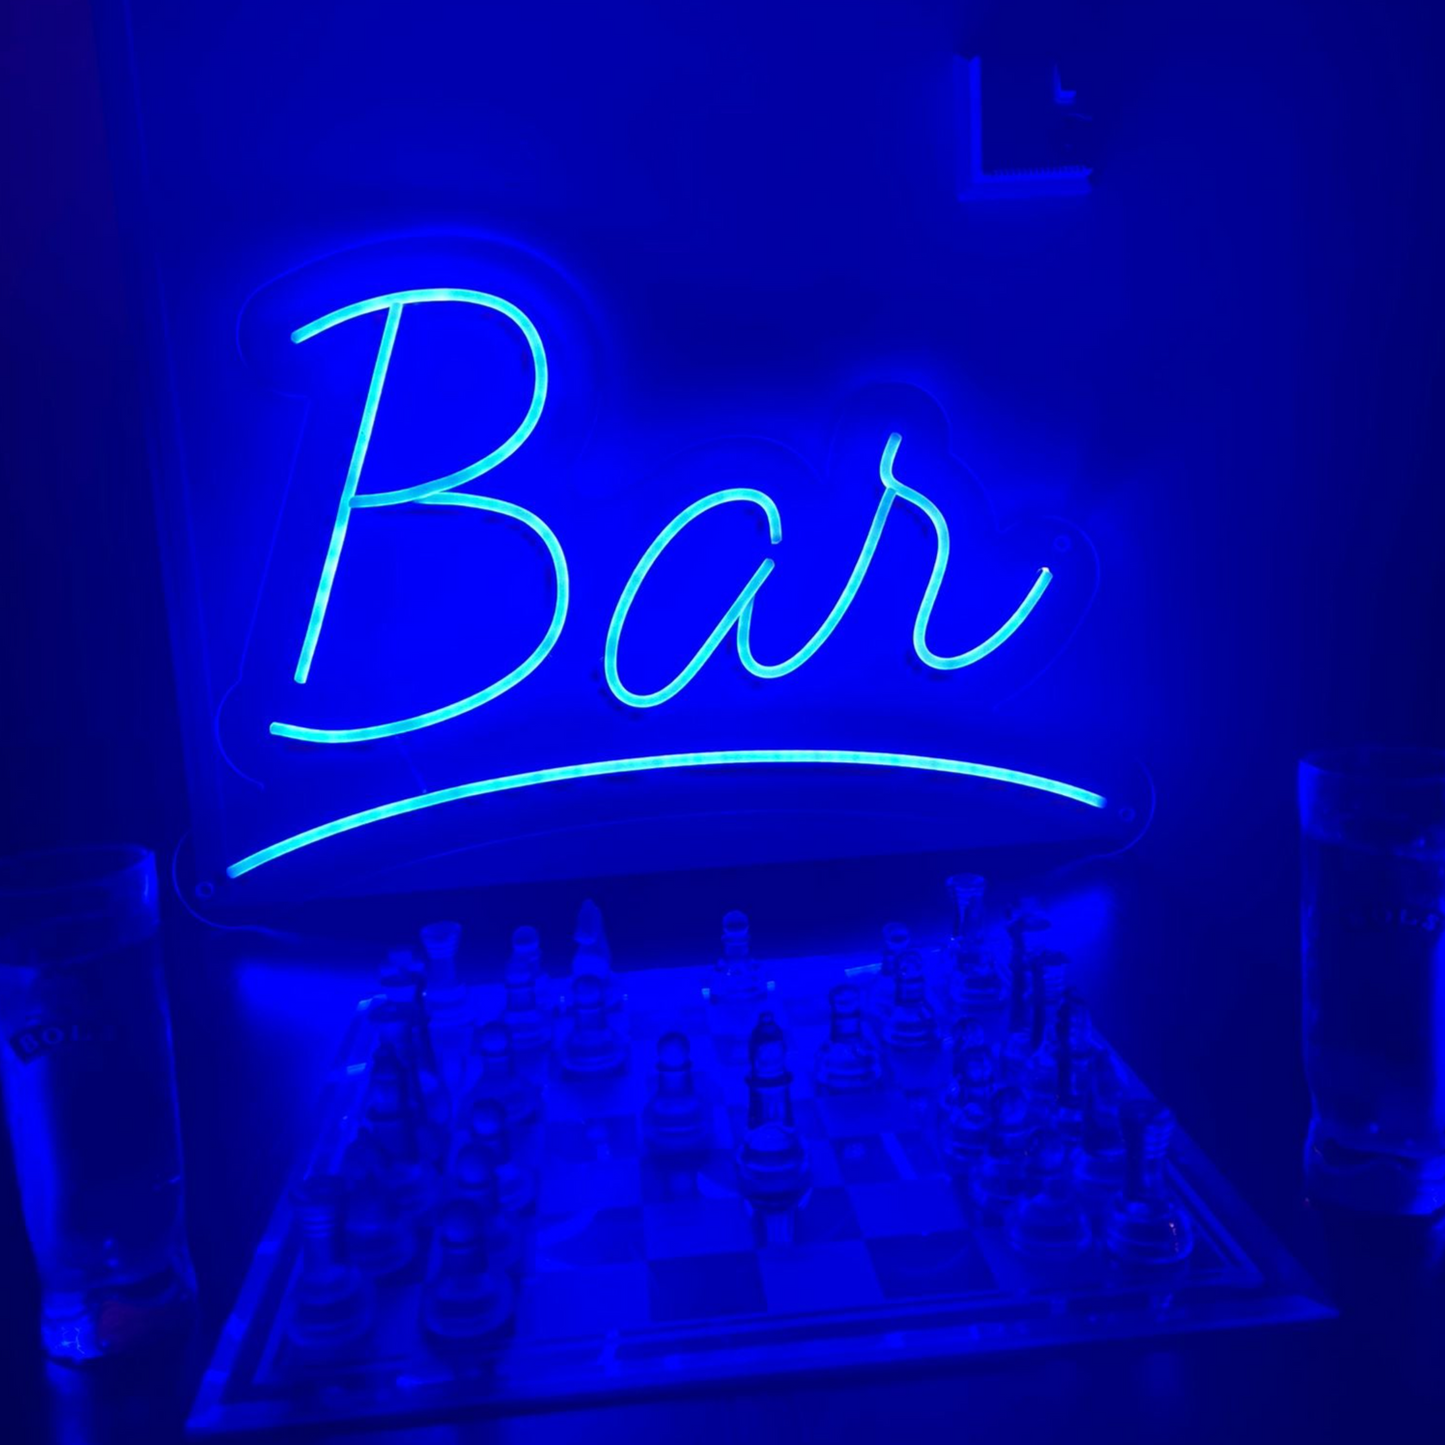 Bar neonskilt